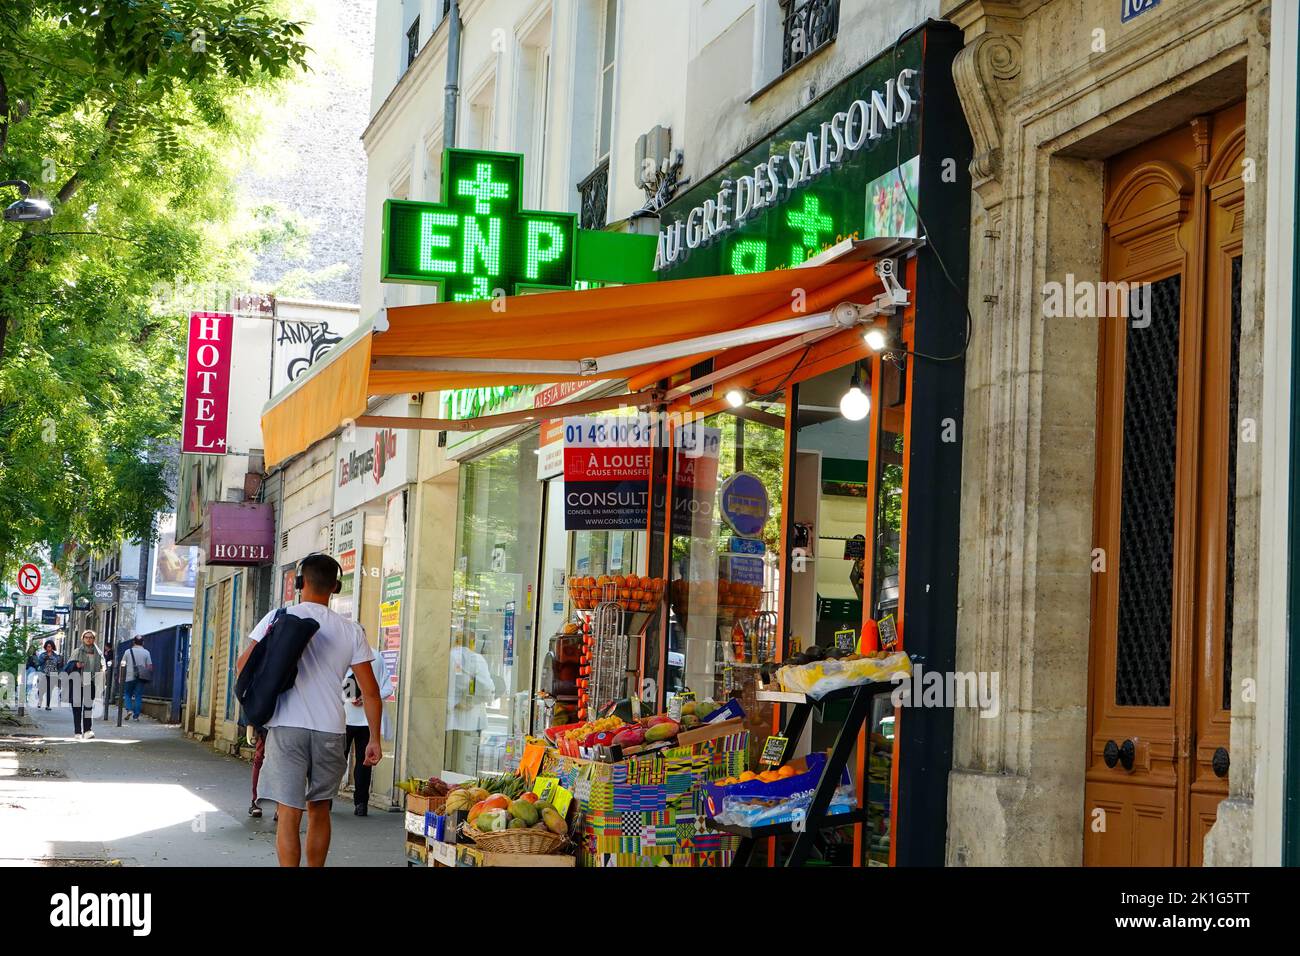 Mann in Fitnesskleidung, der am Obst- und Gemüsemarkt und der Apotheke vorbeigeht, Straßenszene, Alesia, 14. Arrondissement, Paris, Frankreich. Stockfoto